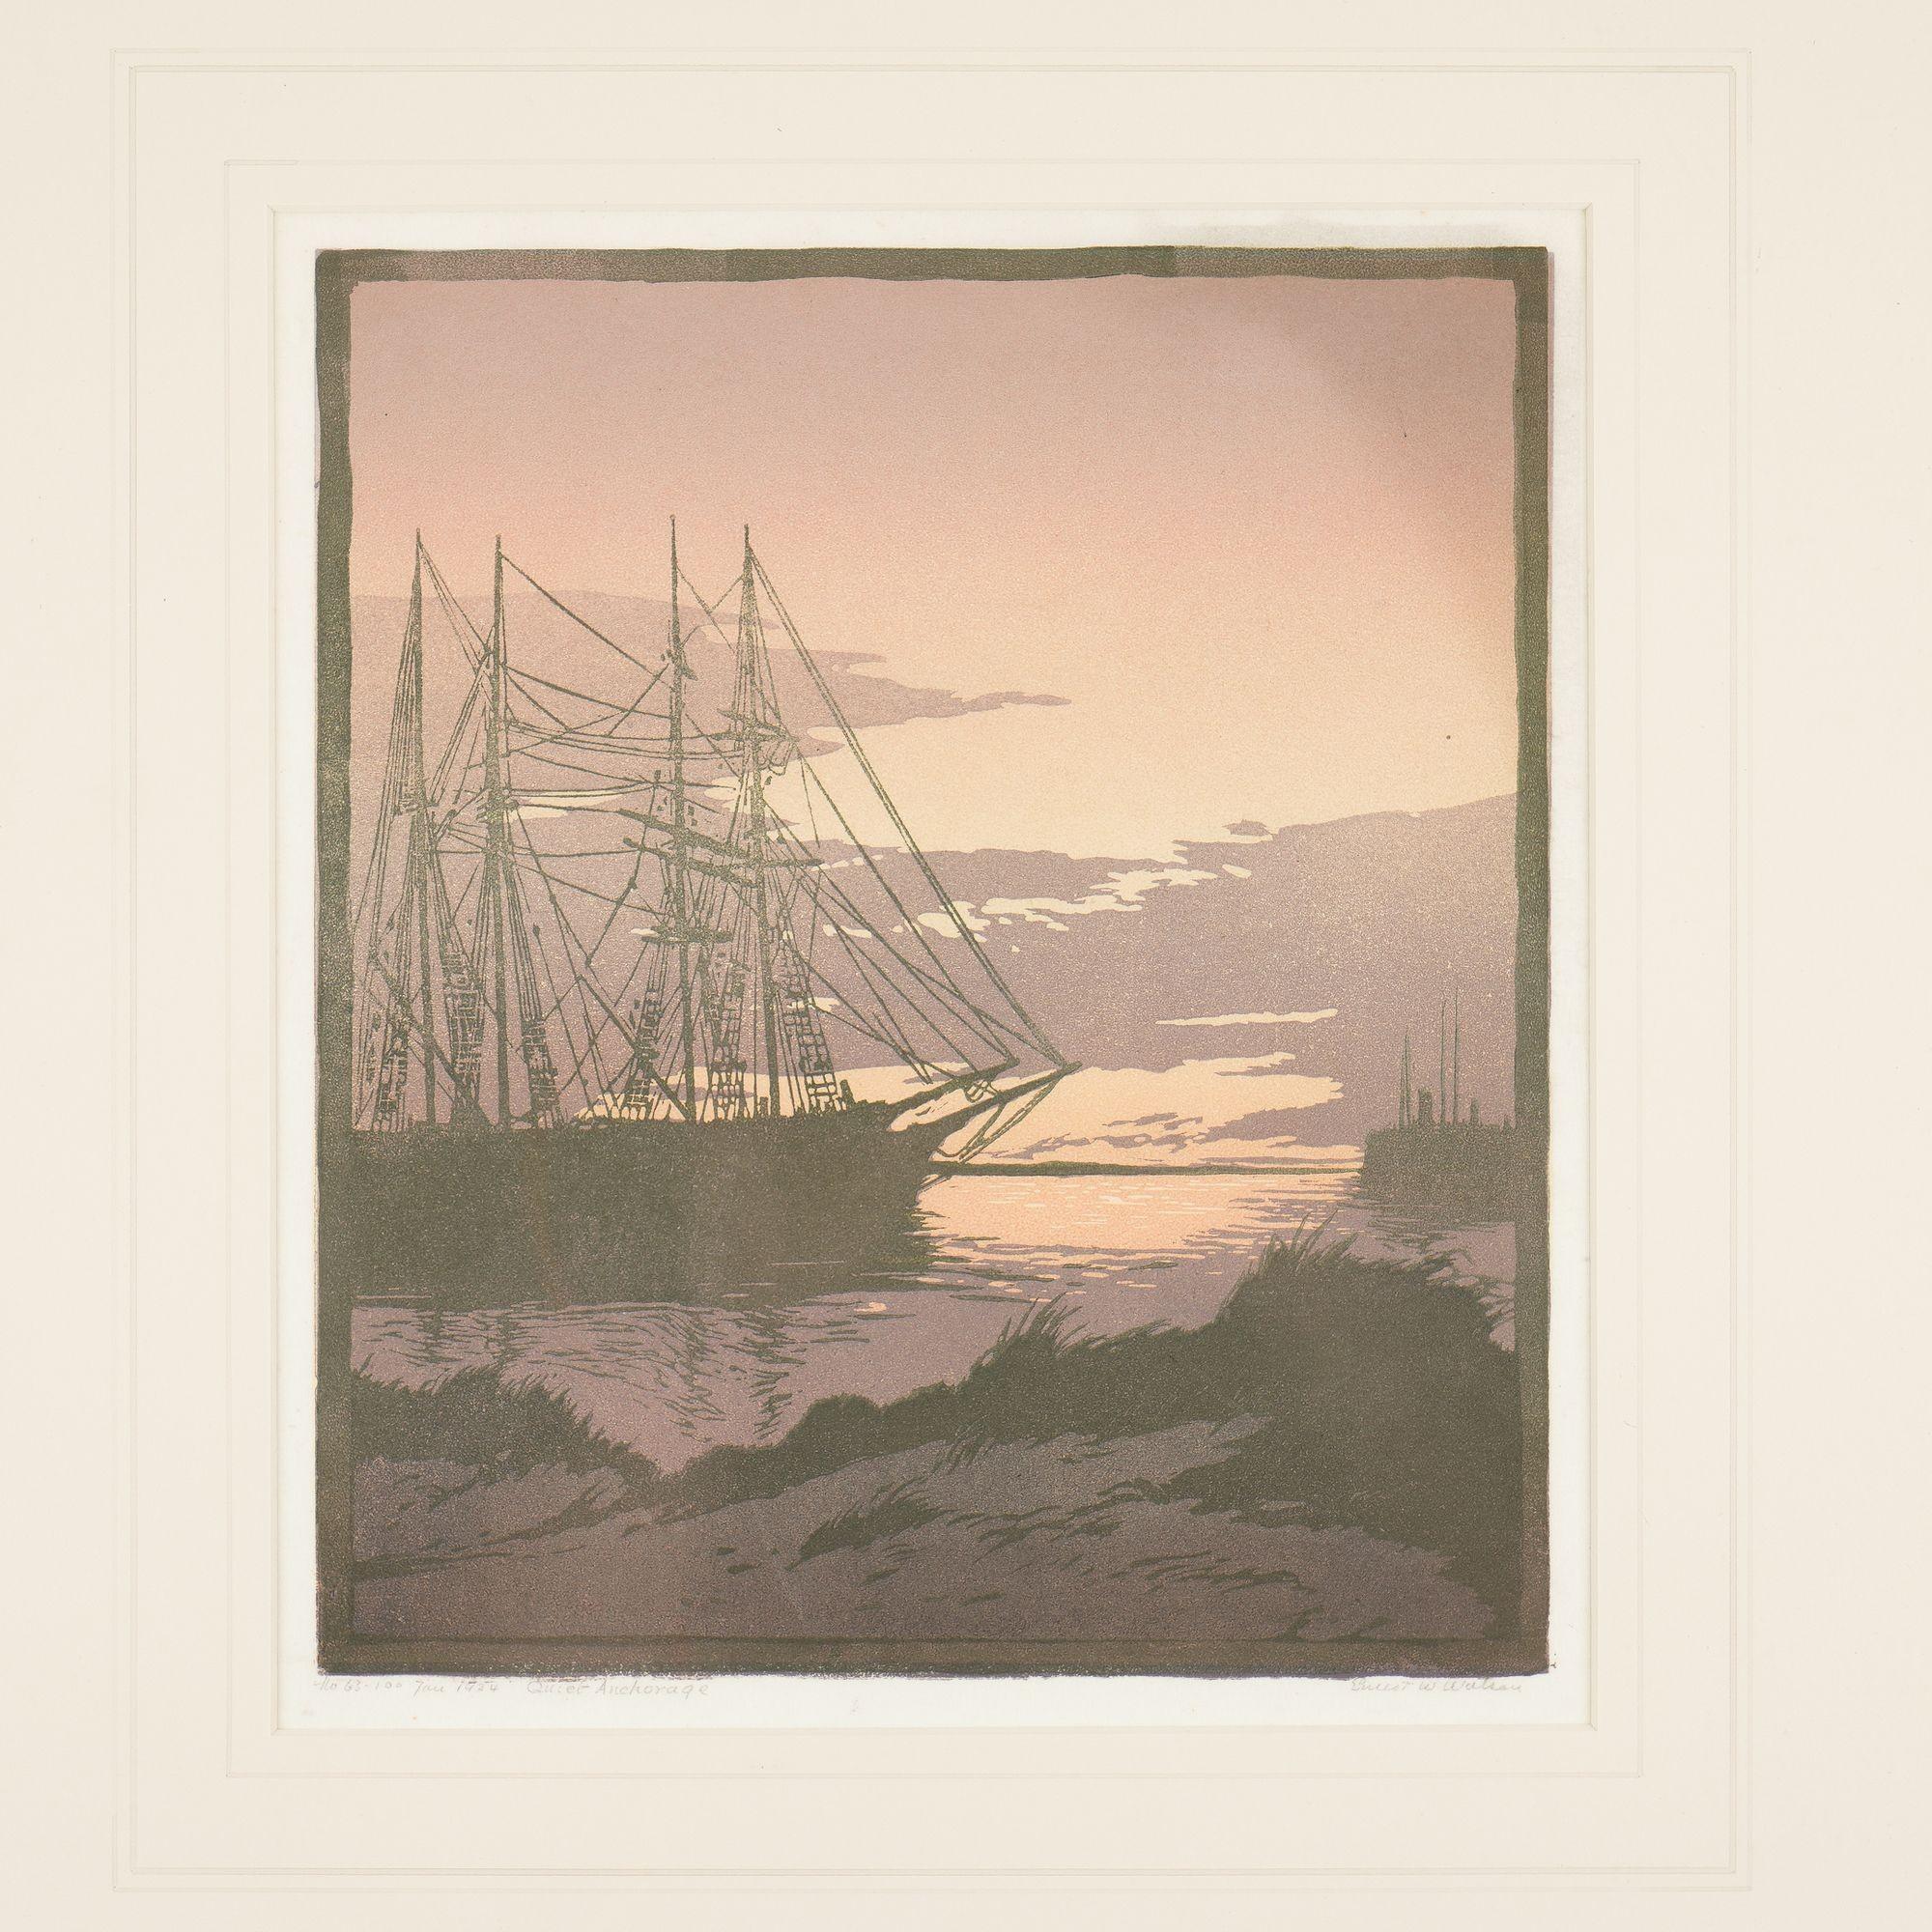 Linoleum-Blockdruck eines vertäuten Segelschiffs bei Sonnenuntergang, dargestellt in sanften Pastellorangen und -violetten. Montiert in seinem ursprünglichen handgeschnitzten Rahmen.

Nummeriert und datiert in Graphit
Signiert in Graphit, LR: Ernest